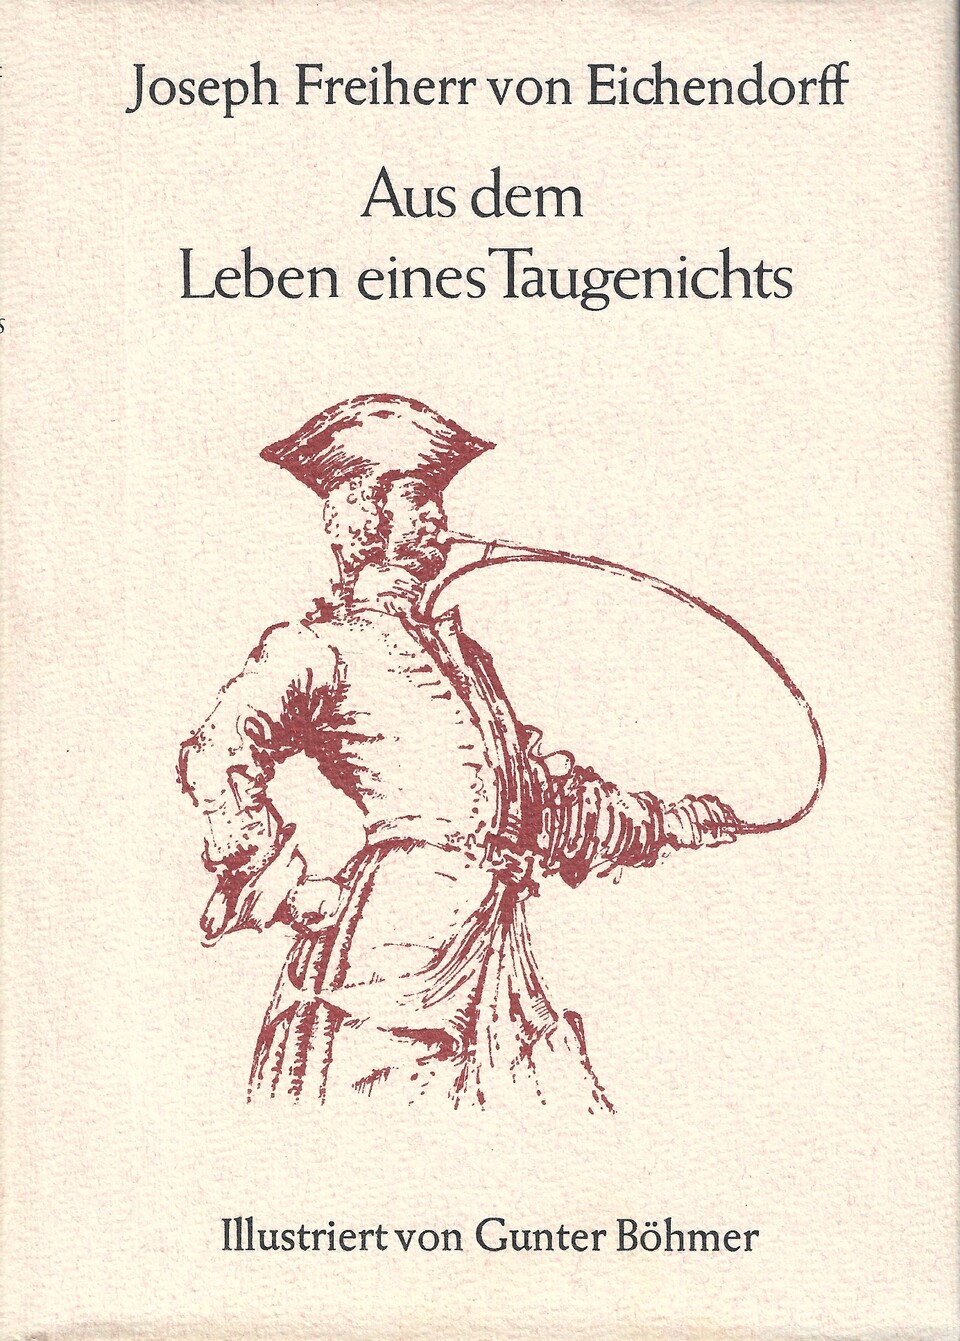 Aus dem Leben eines Taugenichts, Joseph von Eichendorff, Tübingen 1975, mit freundlicher Genehmigung des Rowohlt Verlages, Hamburg